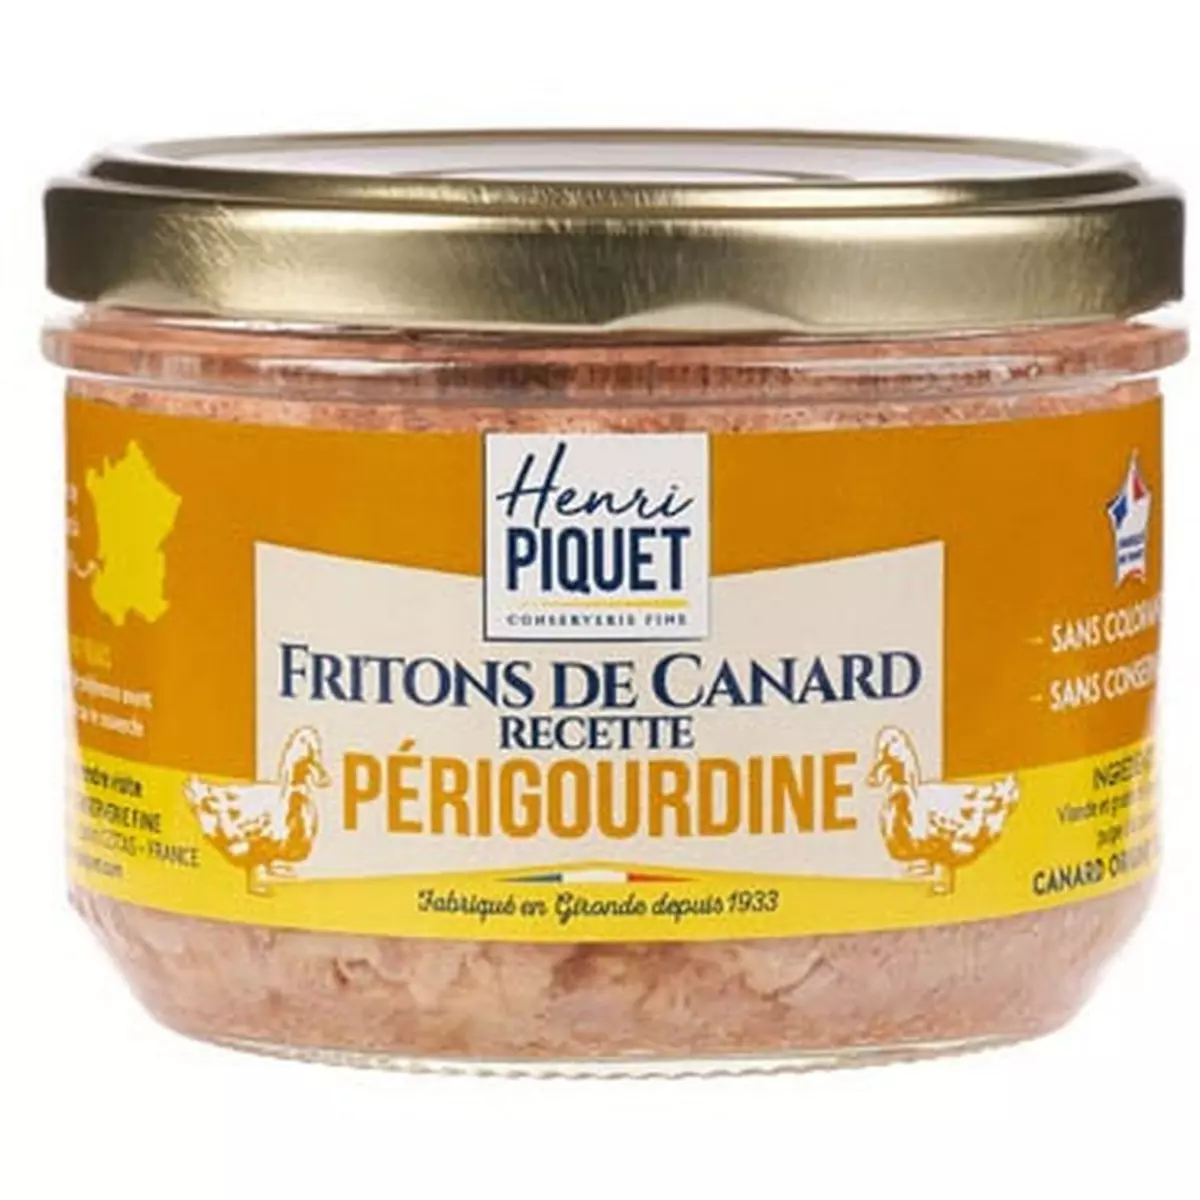 HENRI PIQUET Fritons de canard recette Périgourdine 180g